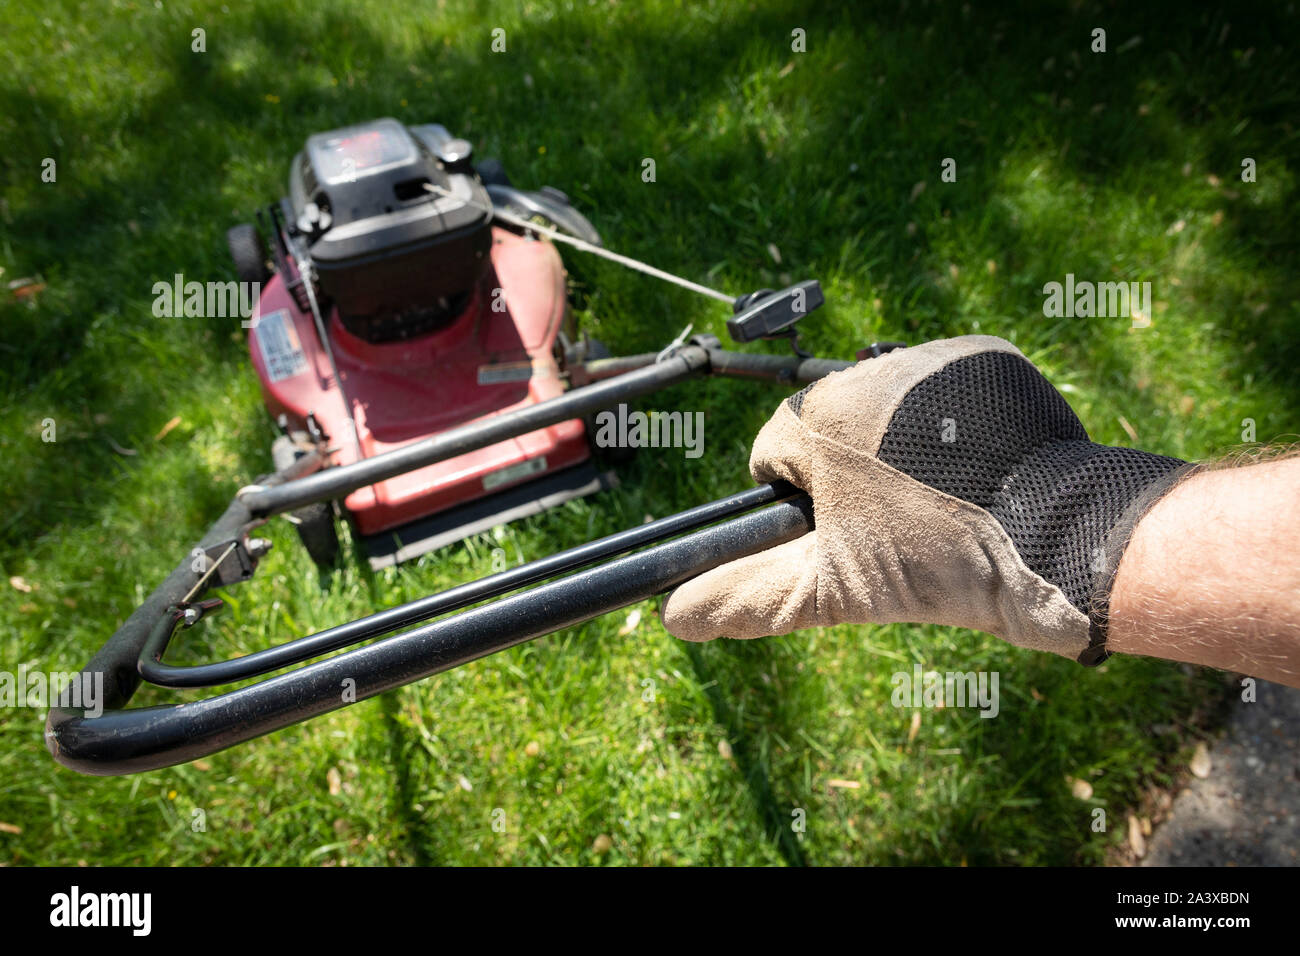 Hand in glove pushing lawnmower through green grass. Stock Photo